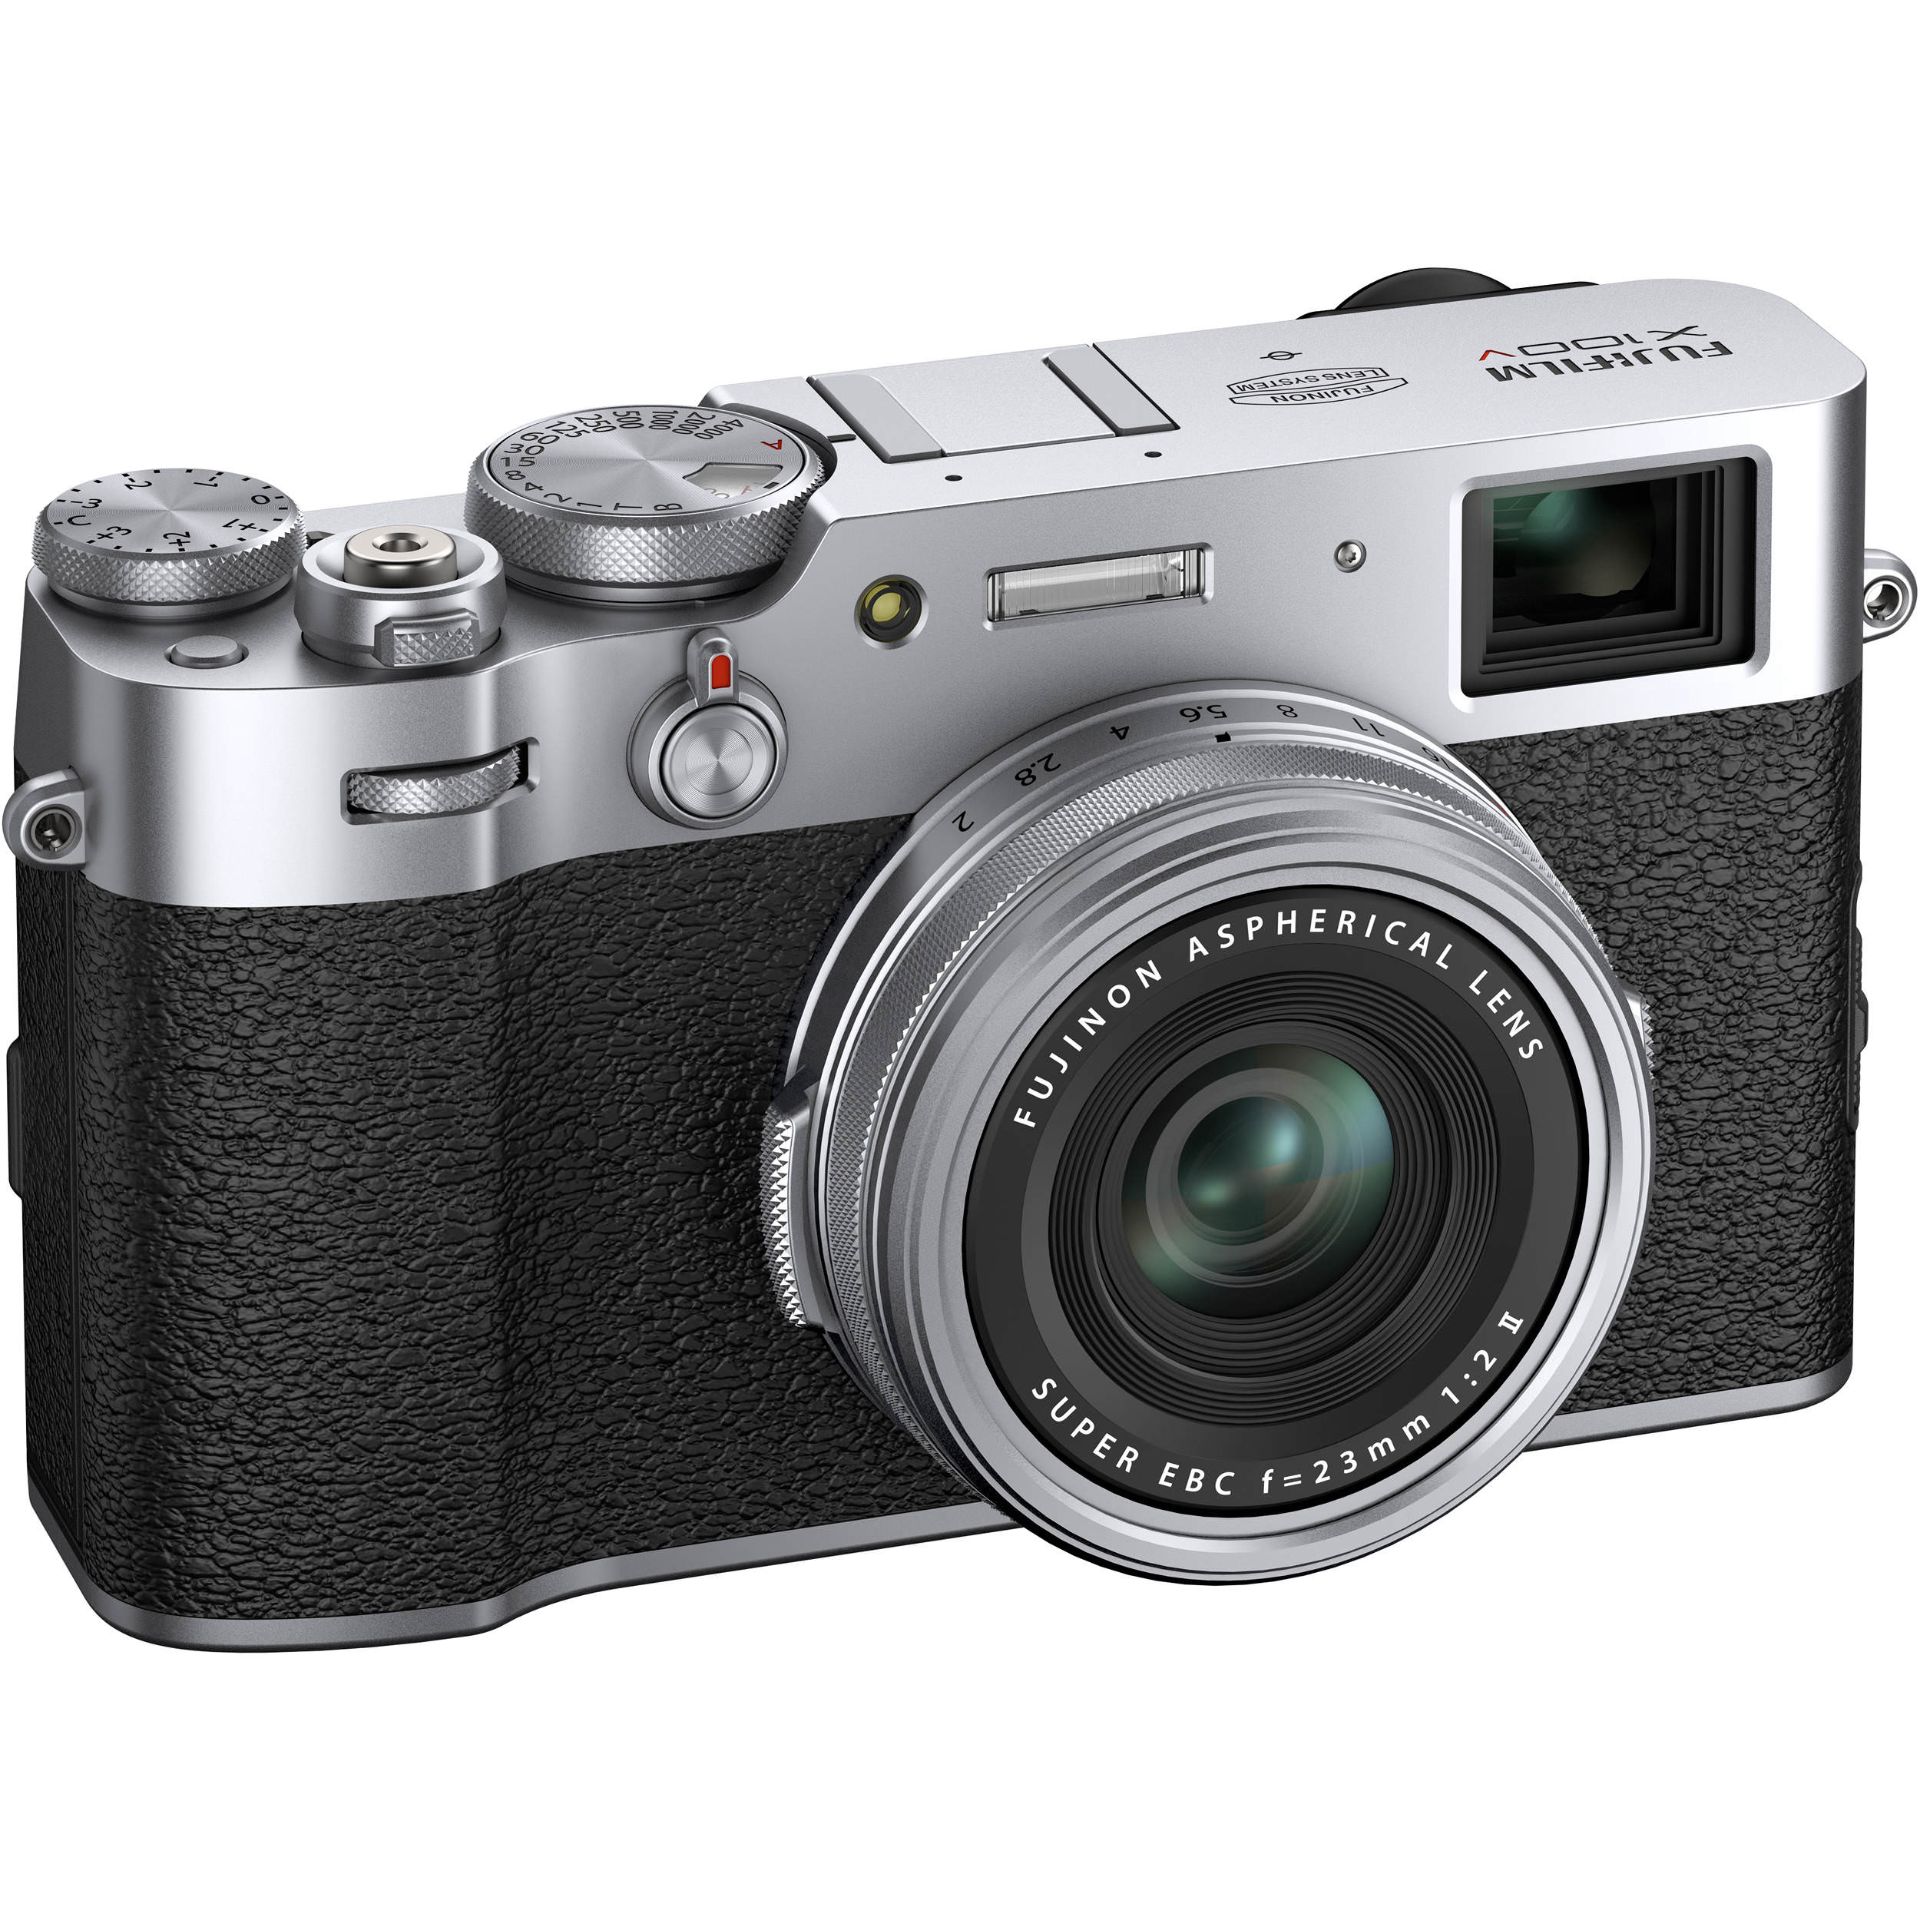 دوربین فوجی فیلم / Fujifilm X100V